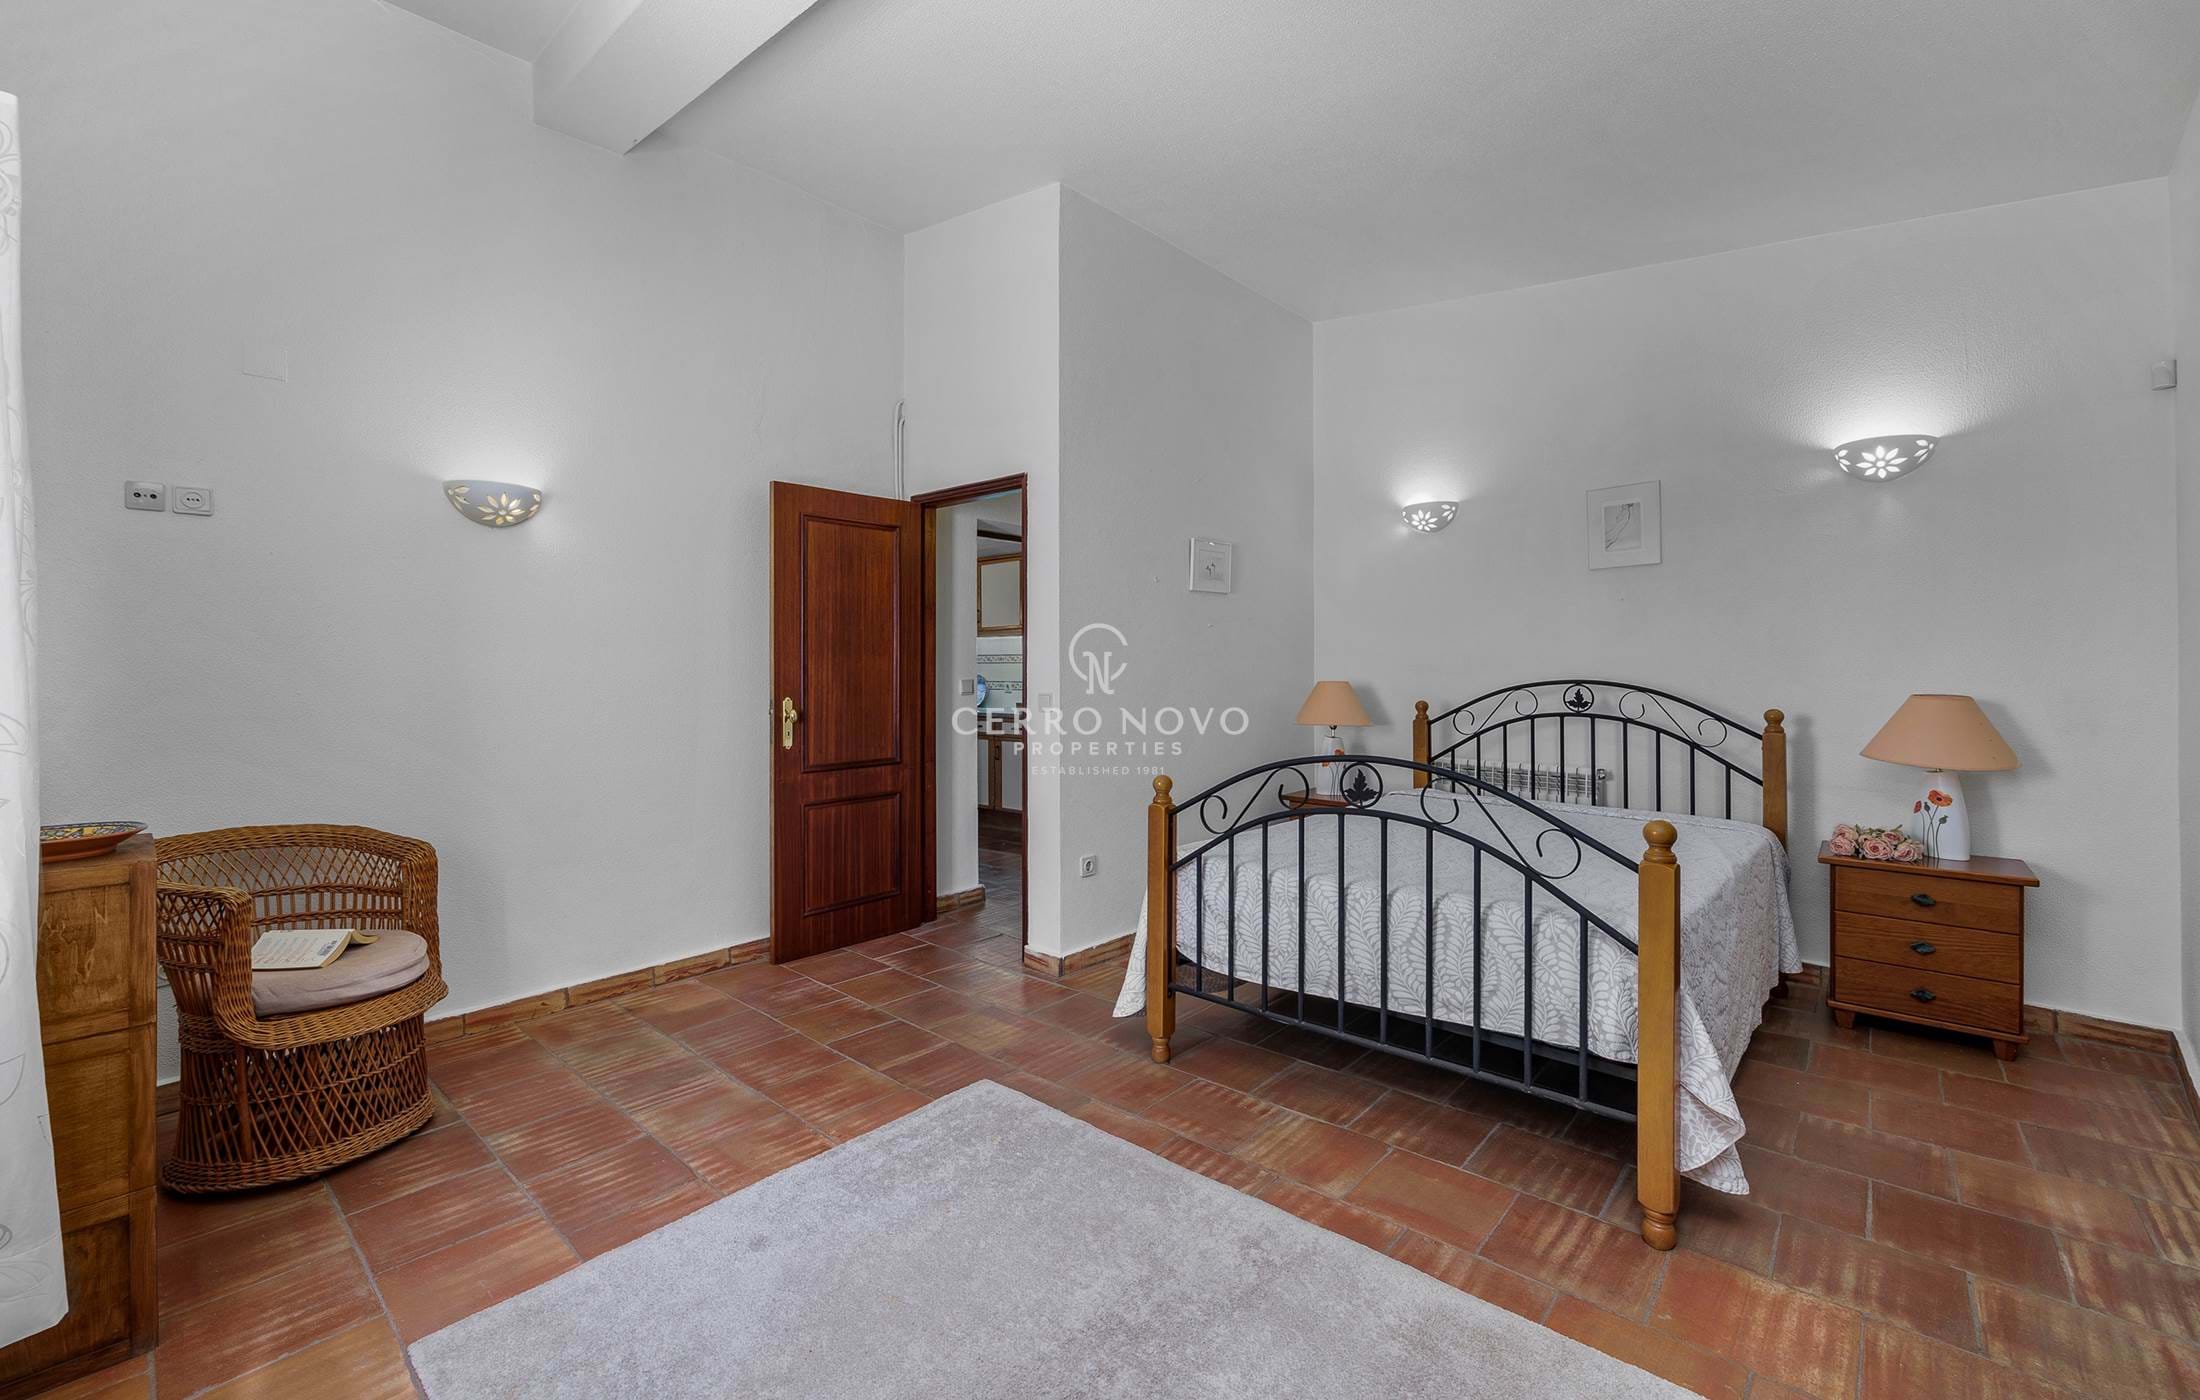 Three Bedroom detached villa in Albufeira’s new town